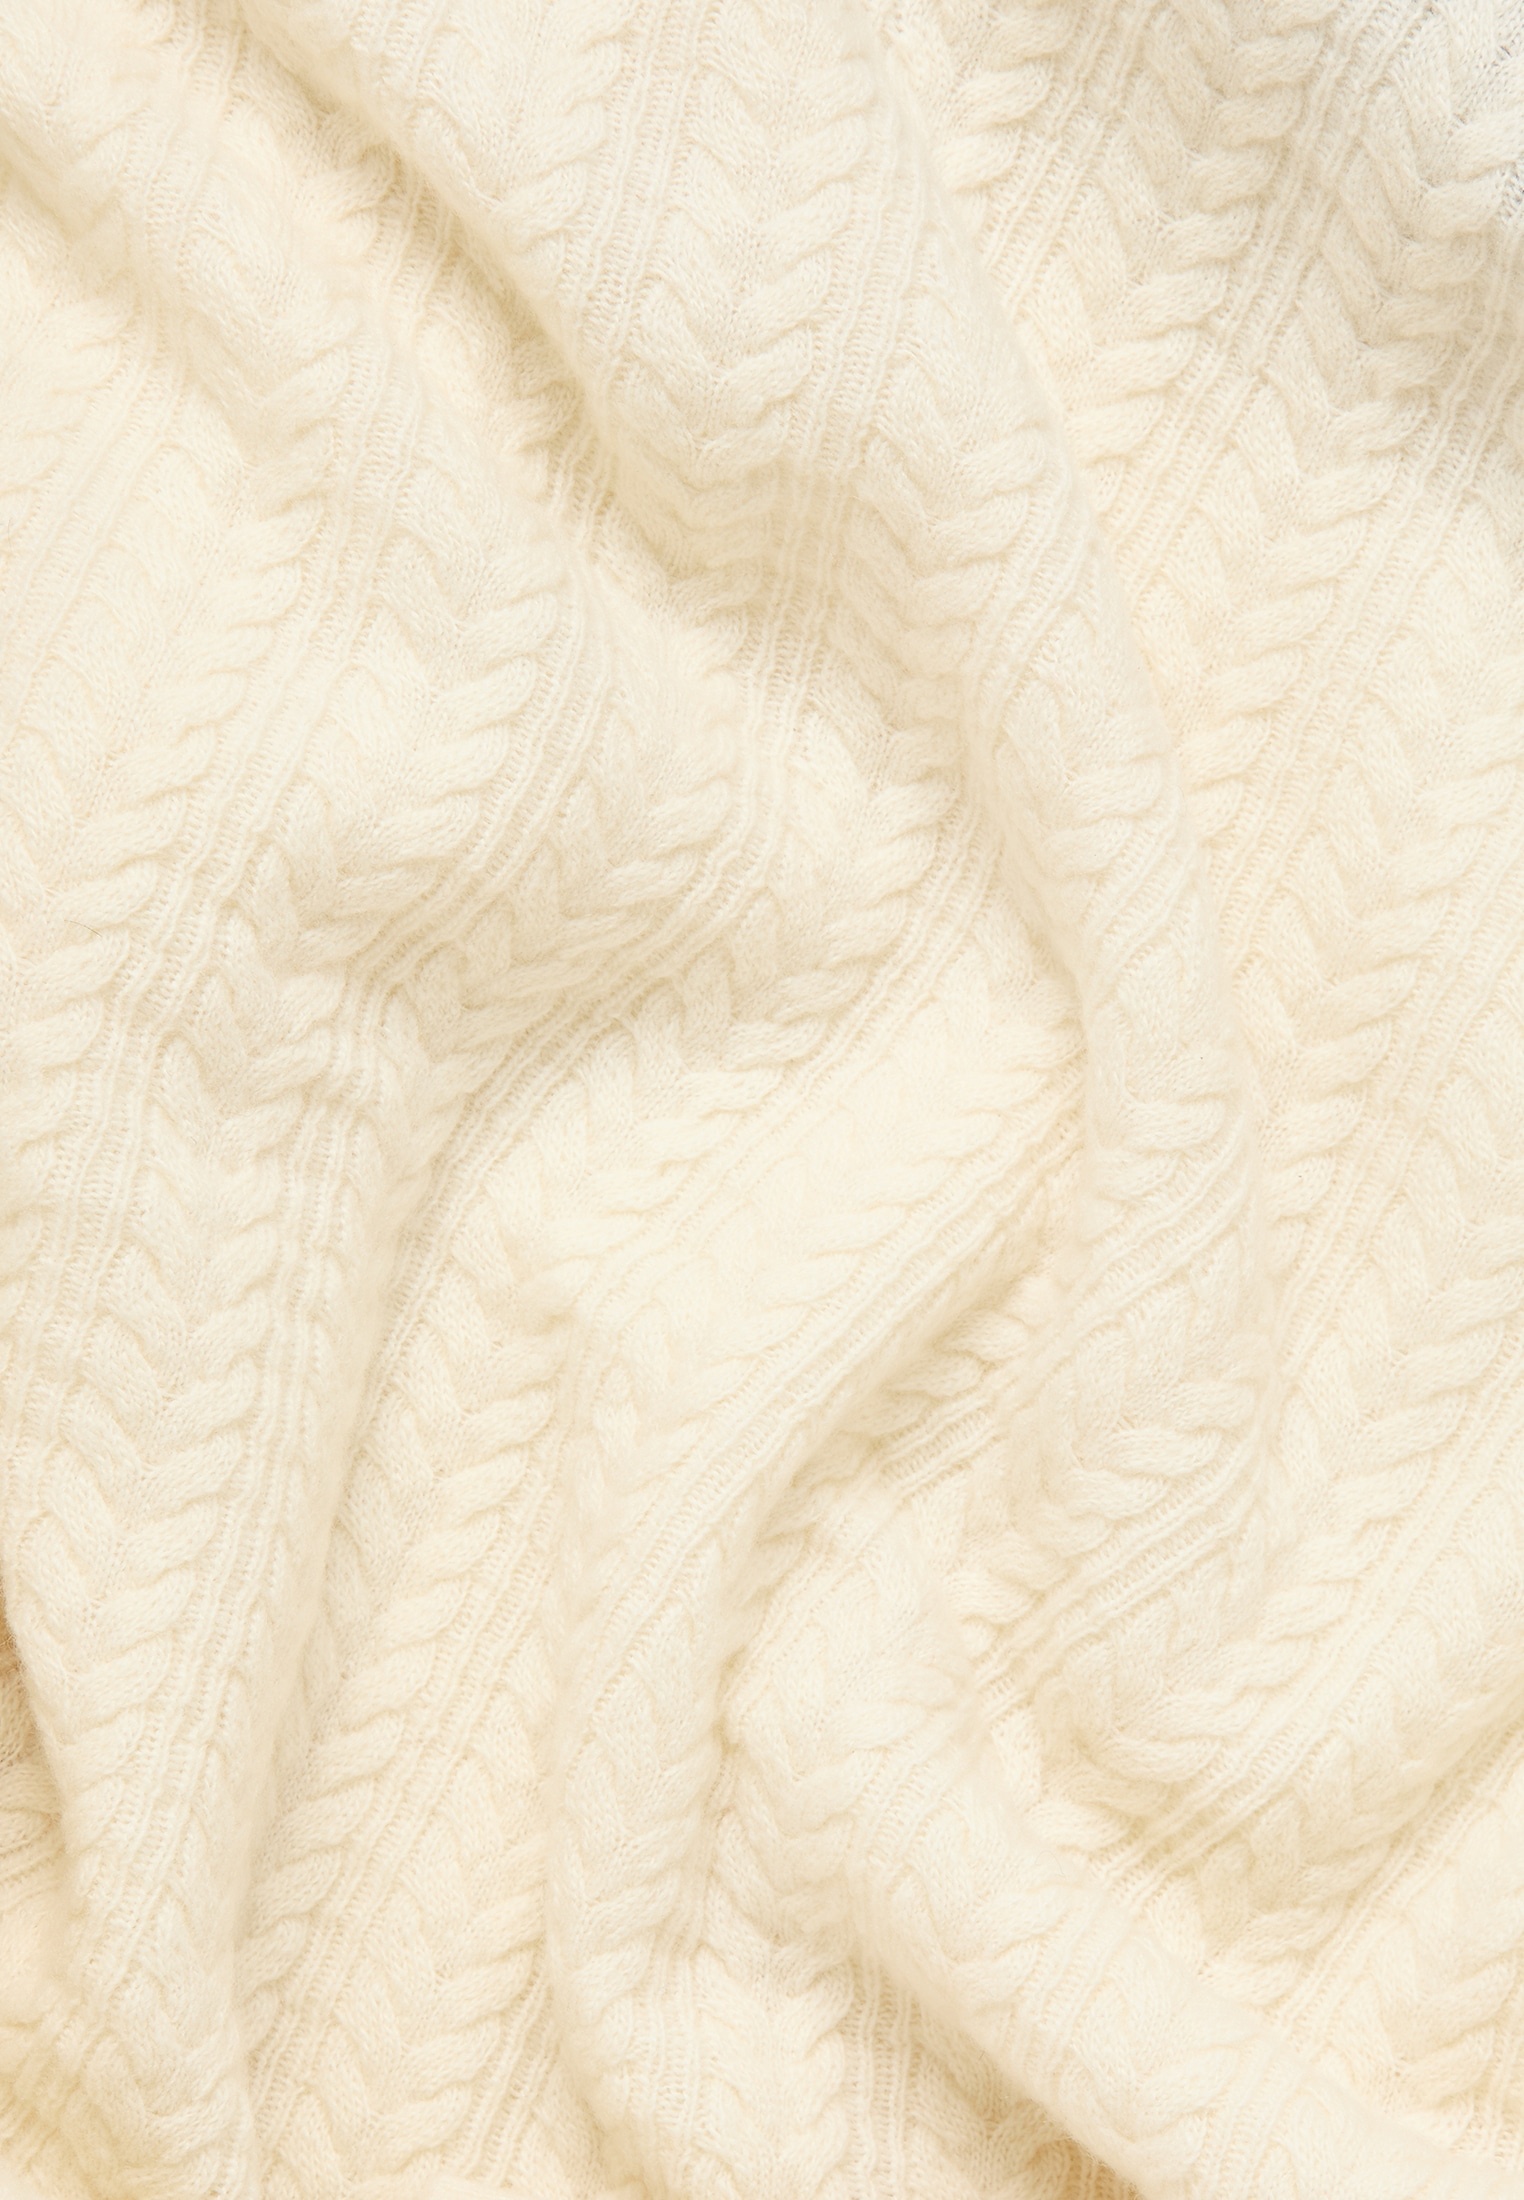 Bild von Strick Pullover in off-white unifarben, off-white, L,